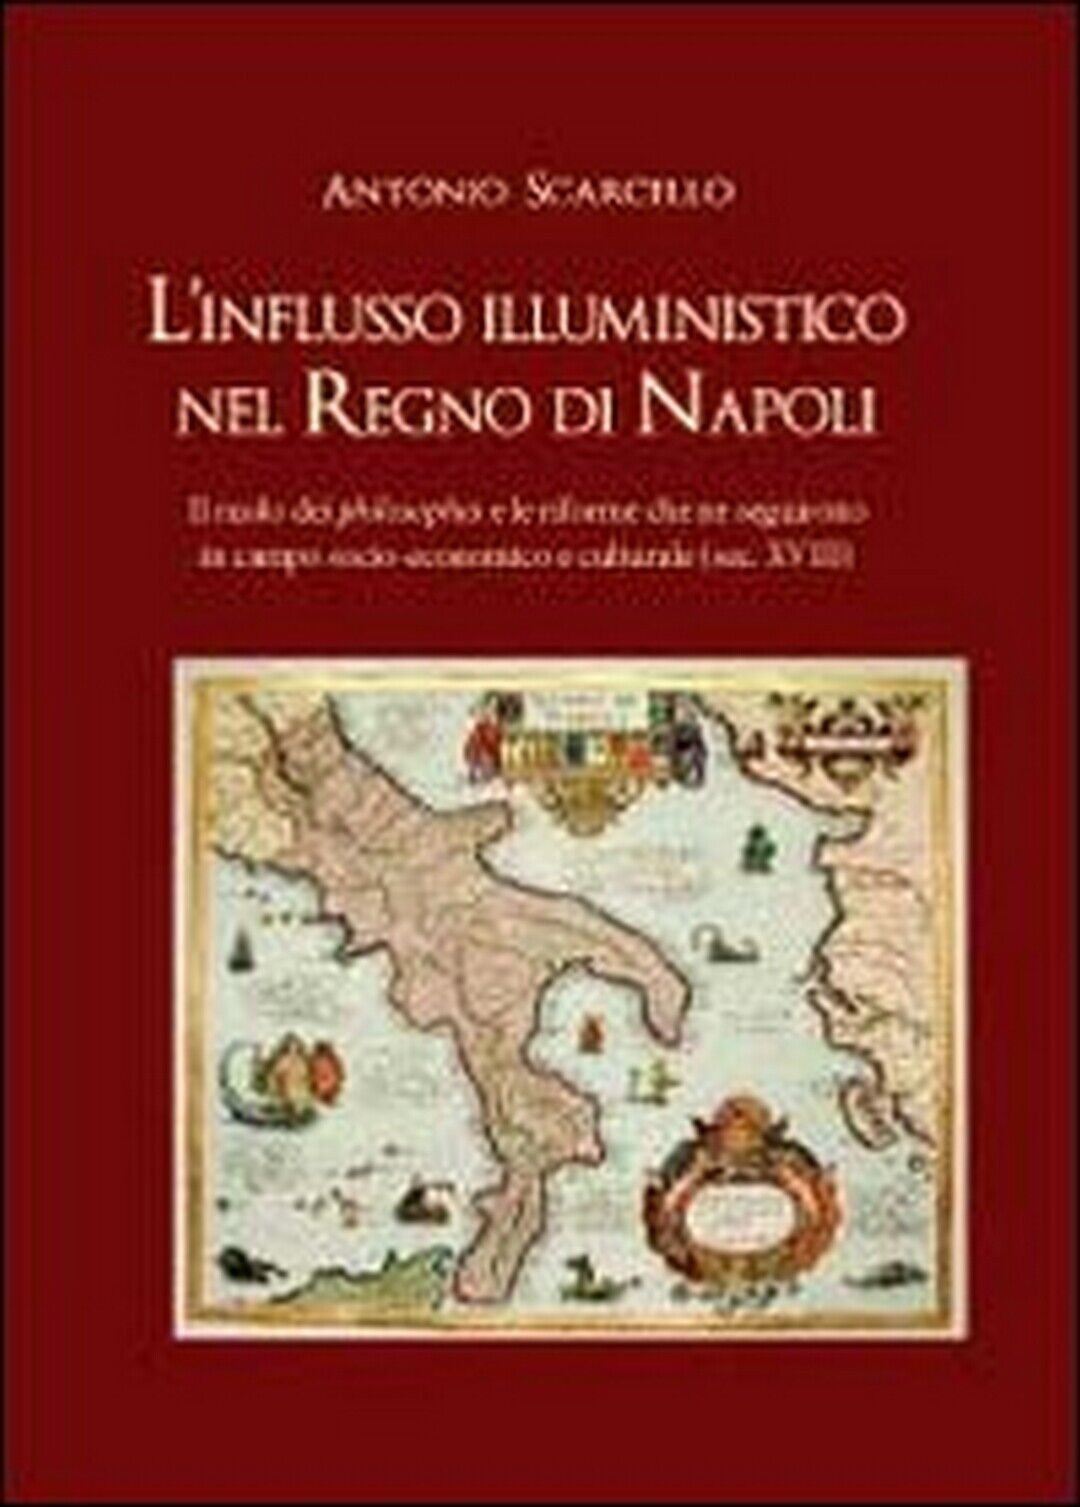 L'influsso illuministico nel Regno di Napoli, Antonio Scarcello,  2012, Youcanp.